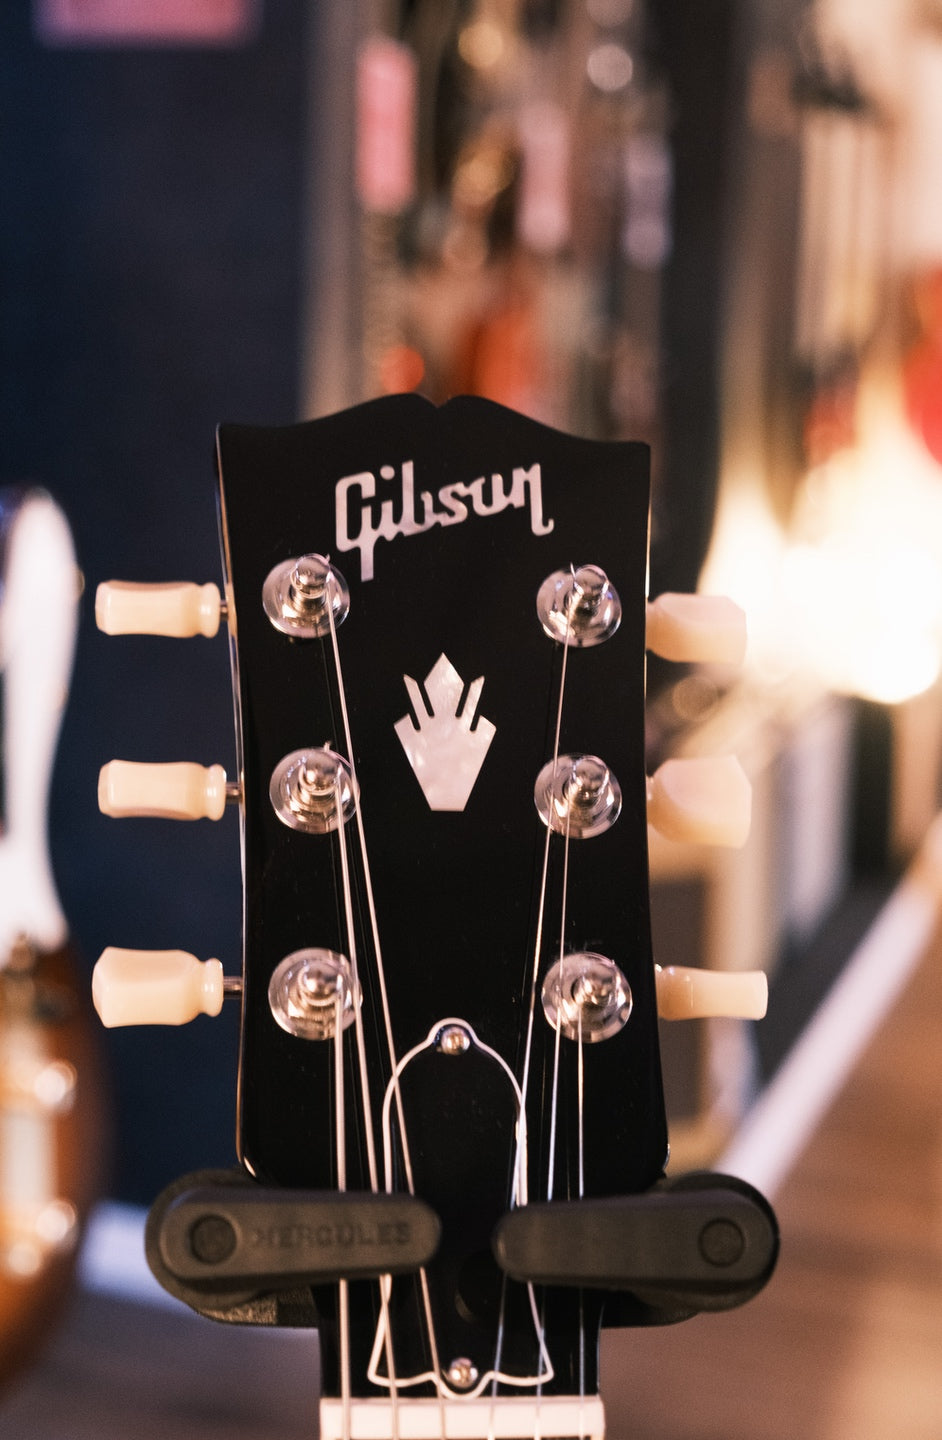 Gibson Original ES-335 Vintage Burst